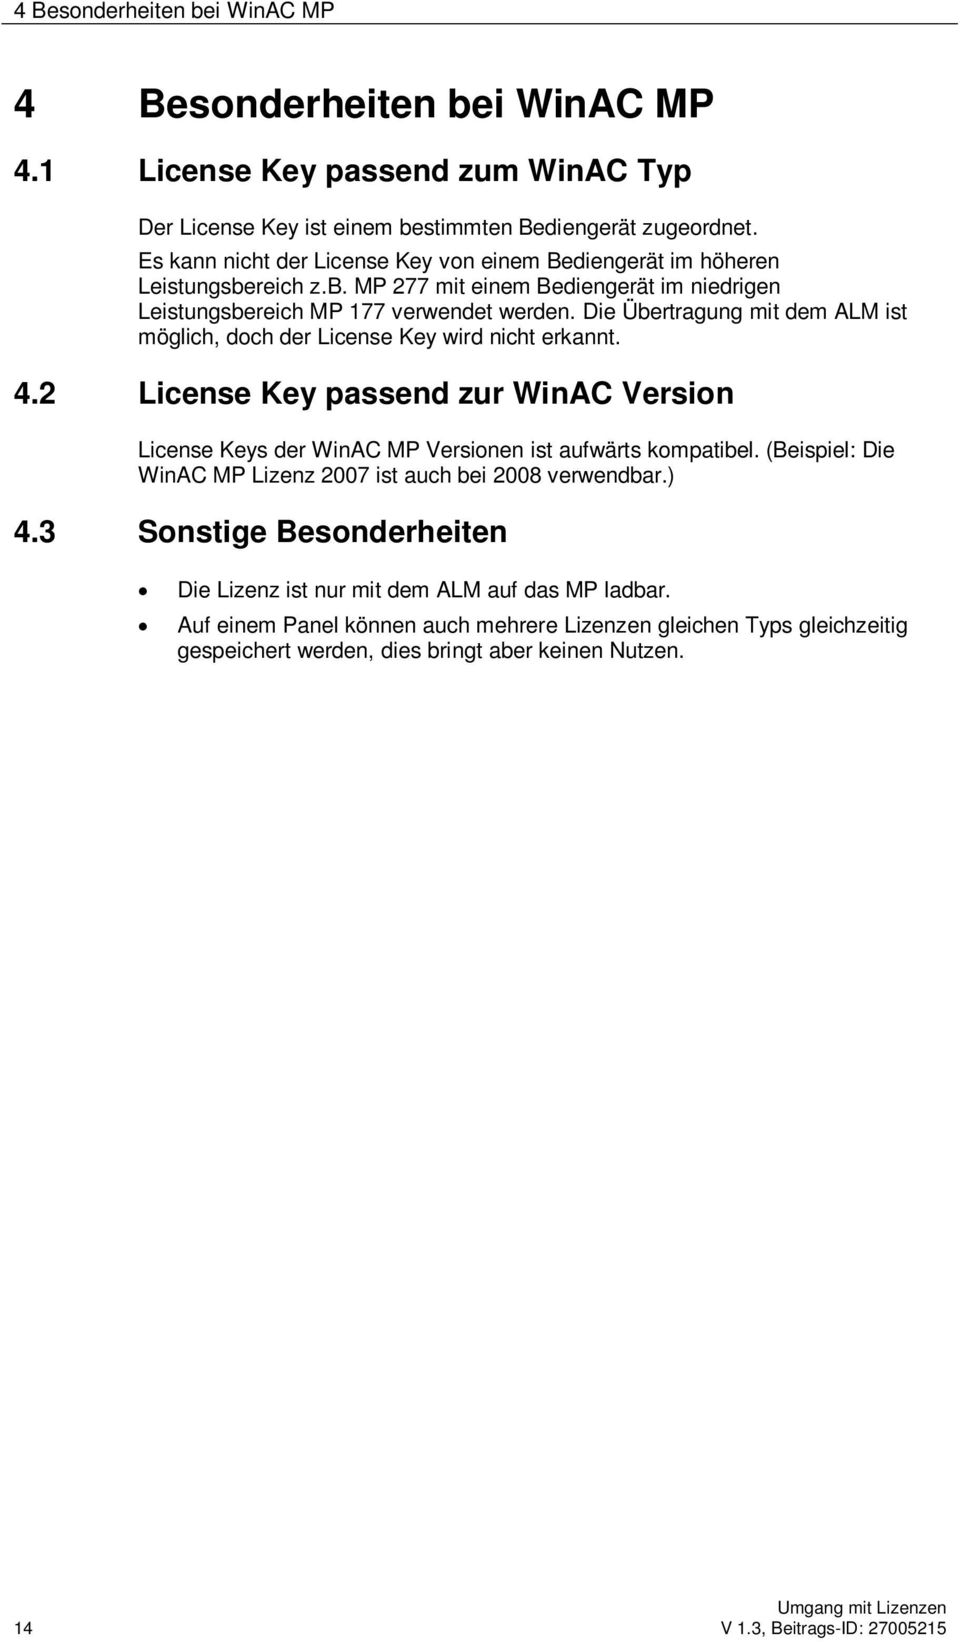 Die Übertragung mit dem ALM ist möglich, doch der License Key wird nicht erkannt. 4.2 License Key passend zur WinAC Version License Keys der WinAC MP Versionen ist aufwärts kompatibel.